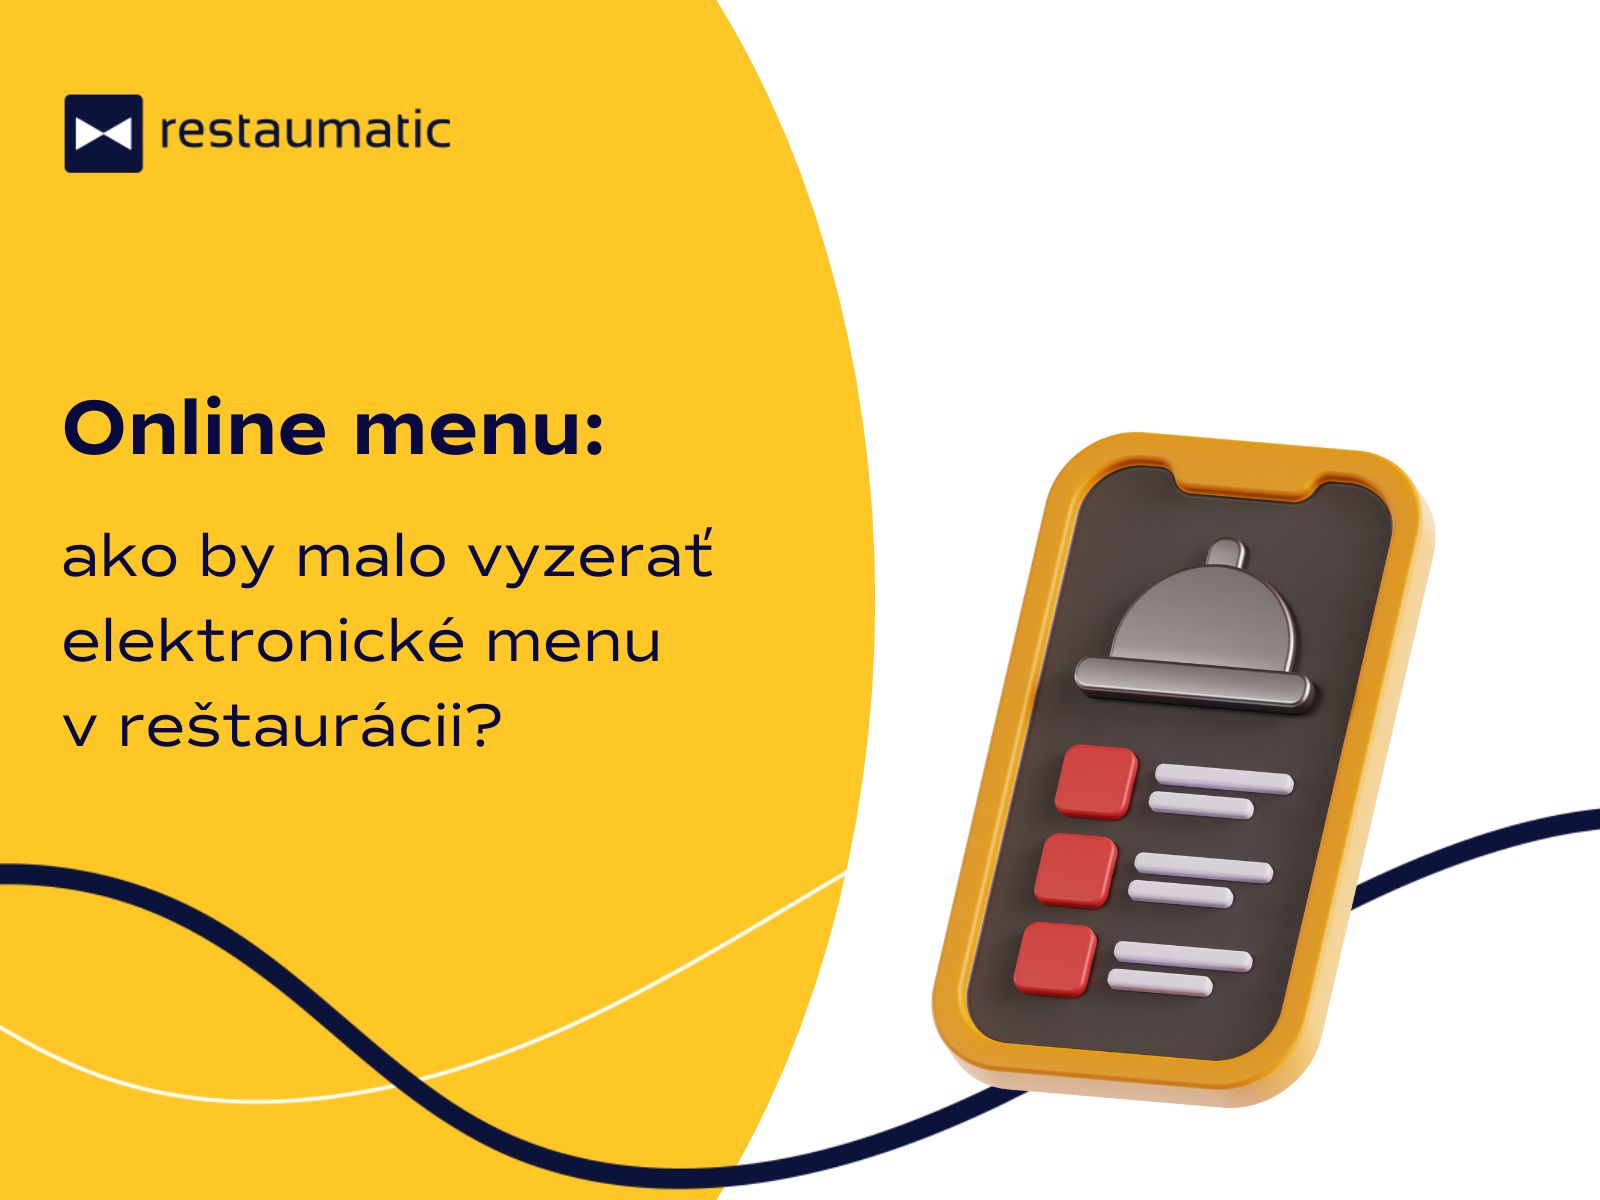 Online menu – ako by malo vyzerať elektronické menu v reštaurácii?